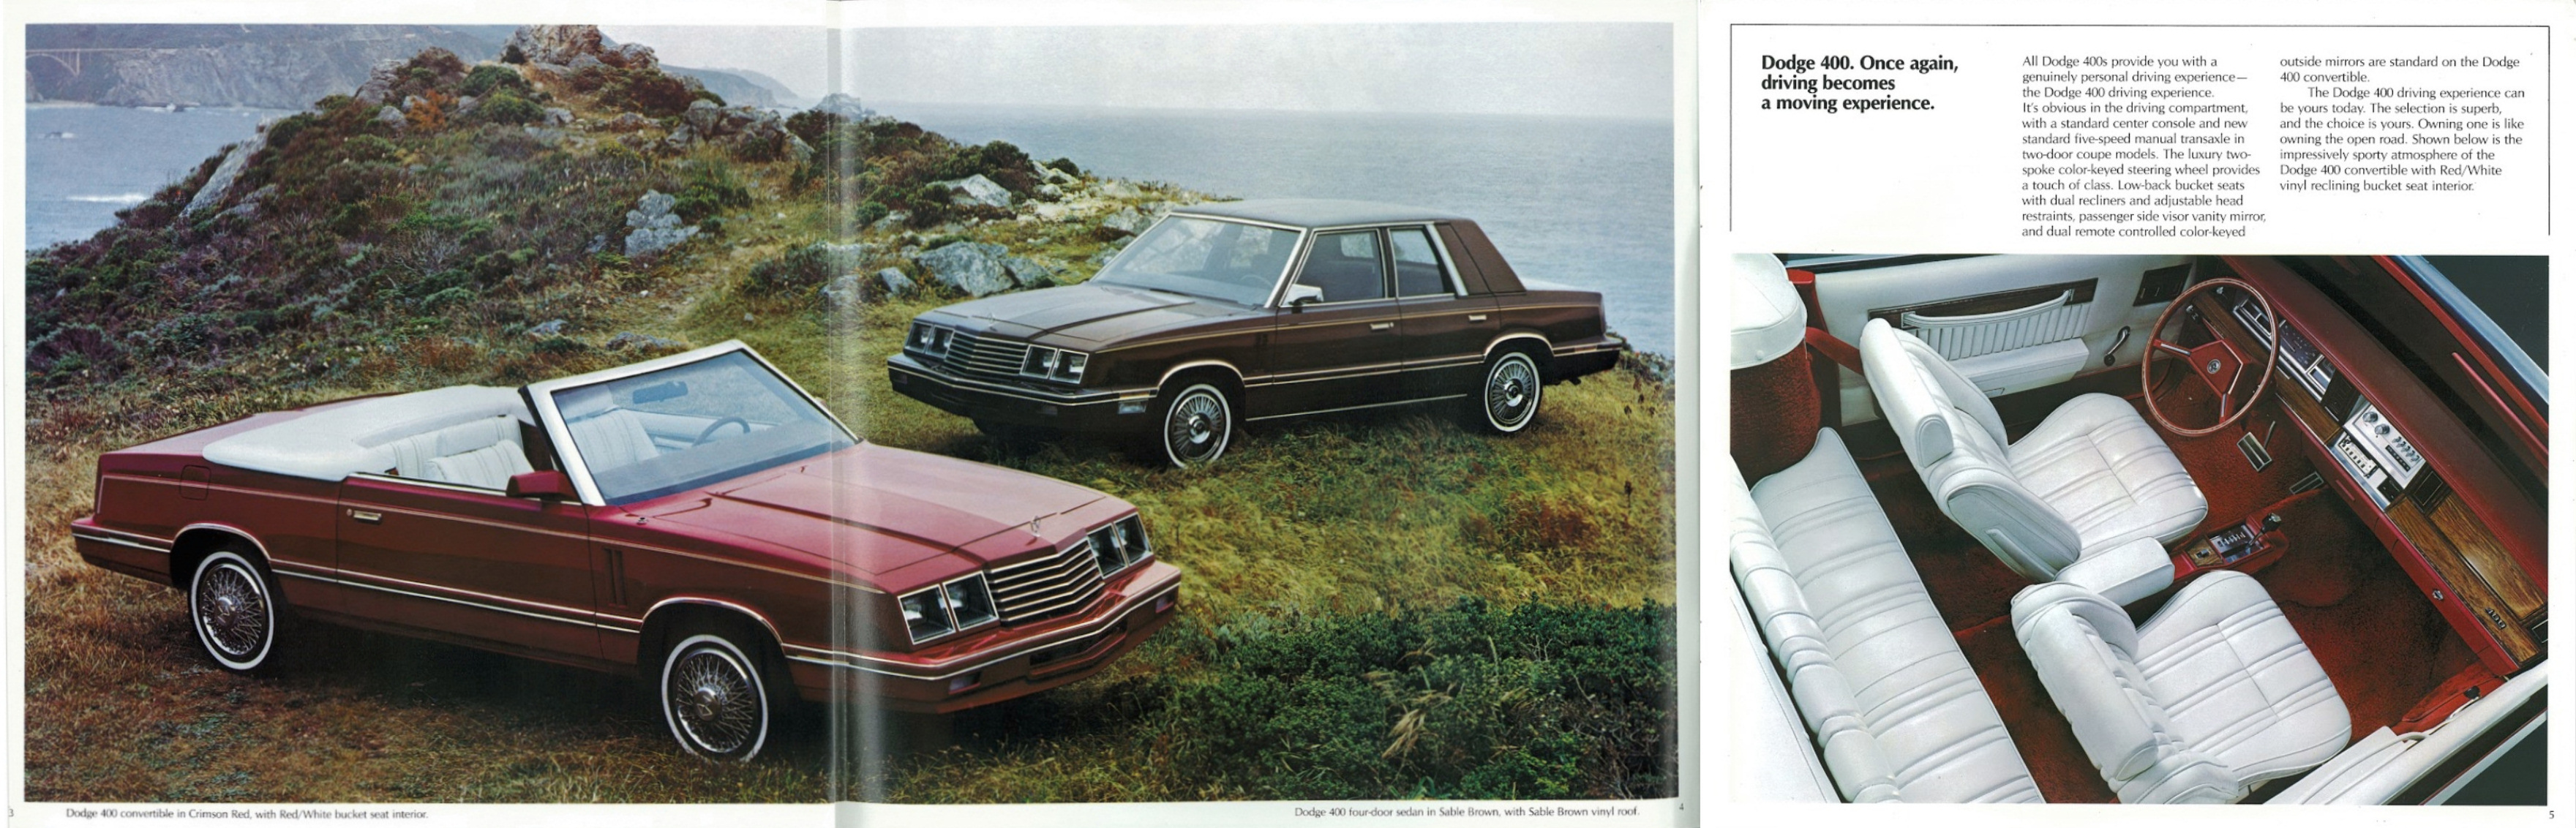 1983_Dodge_400-03-04-05